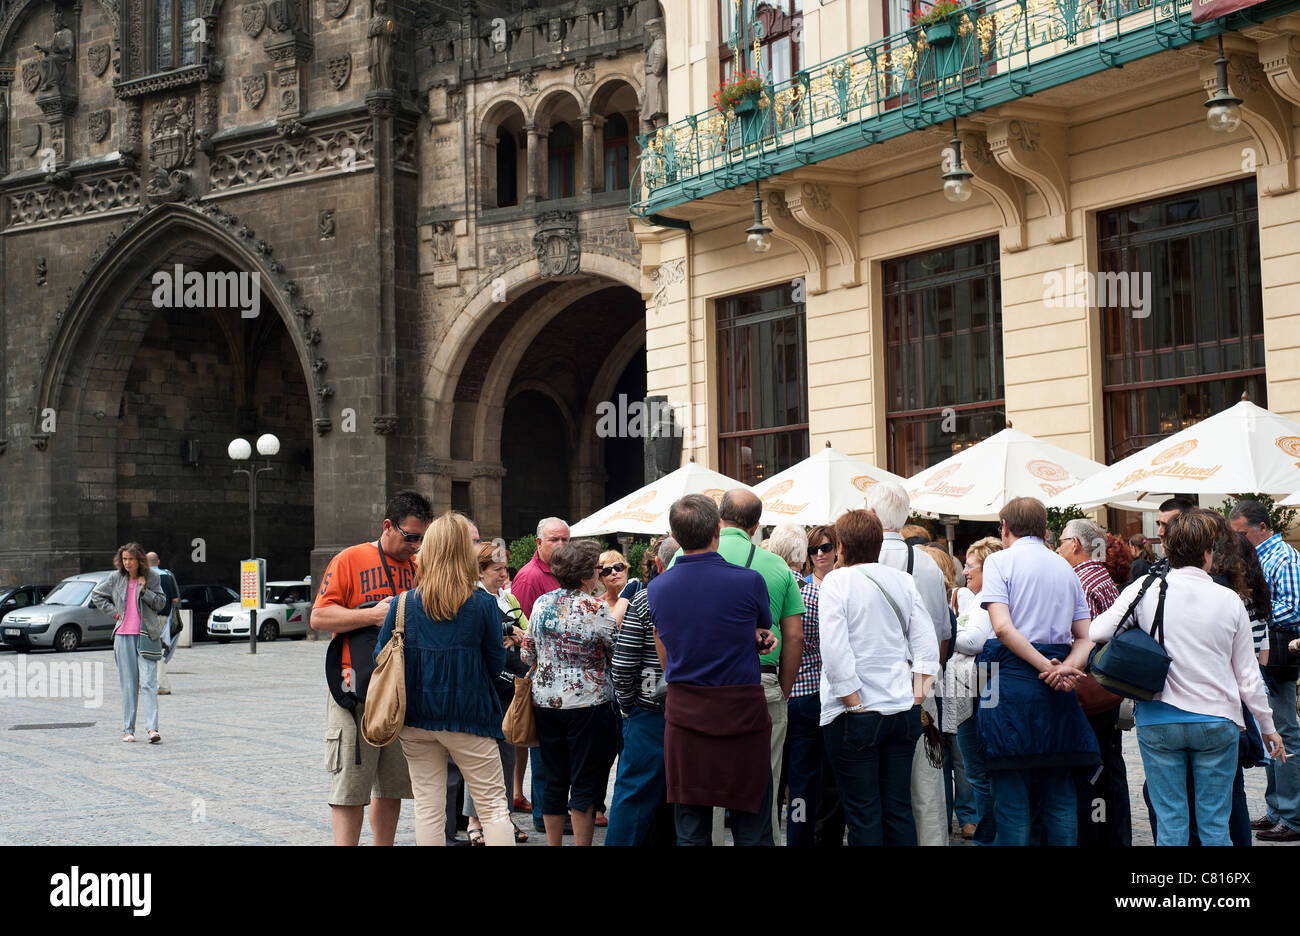 Agosto 2011 - Praga Repubblica Ceca - grande gruppo di turisti nella zona vecchia della città. Foto Stock